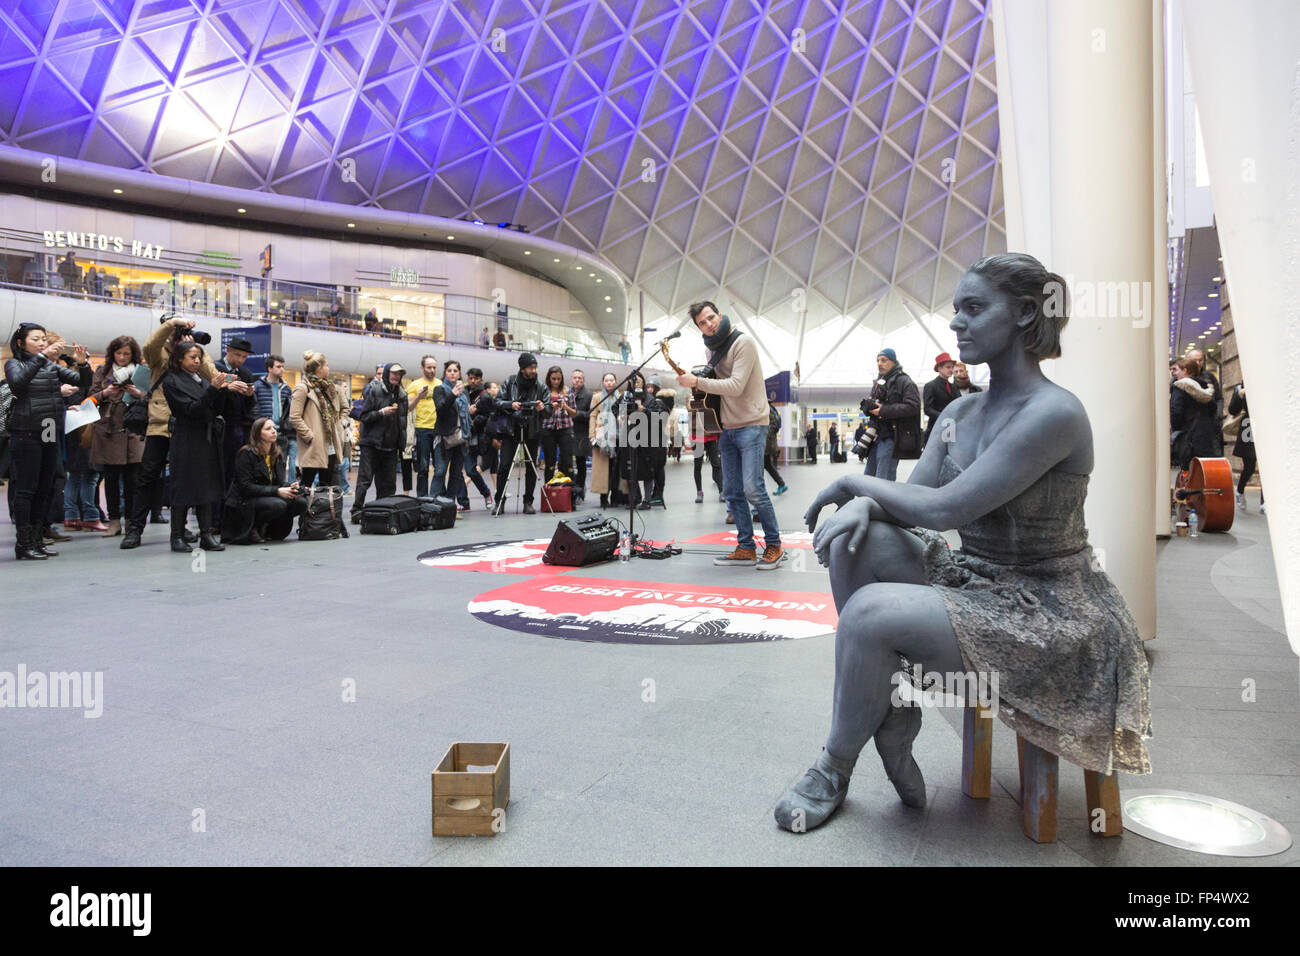 Londra, Regno Unito. Il 16 marzo 2016. Luca Fiore, vincitore del 2015 Busk a Londra la concorrenza, esegue sul piazzale della stazione di King Cross. Con Pippa Moss, statua vivente di una ballerina. Foto Stock